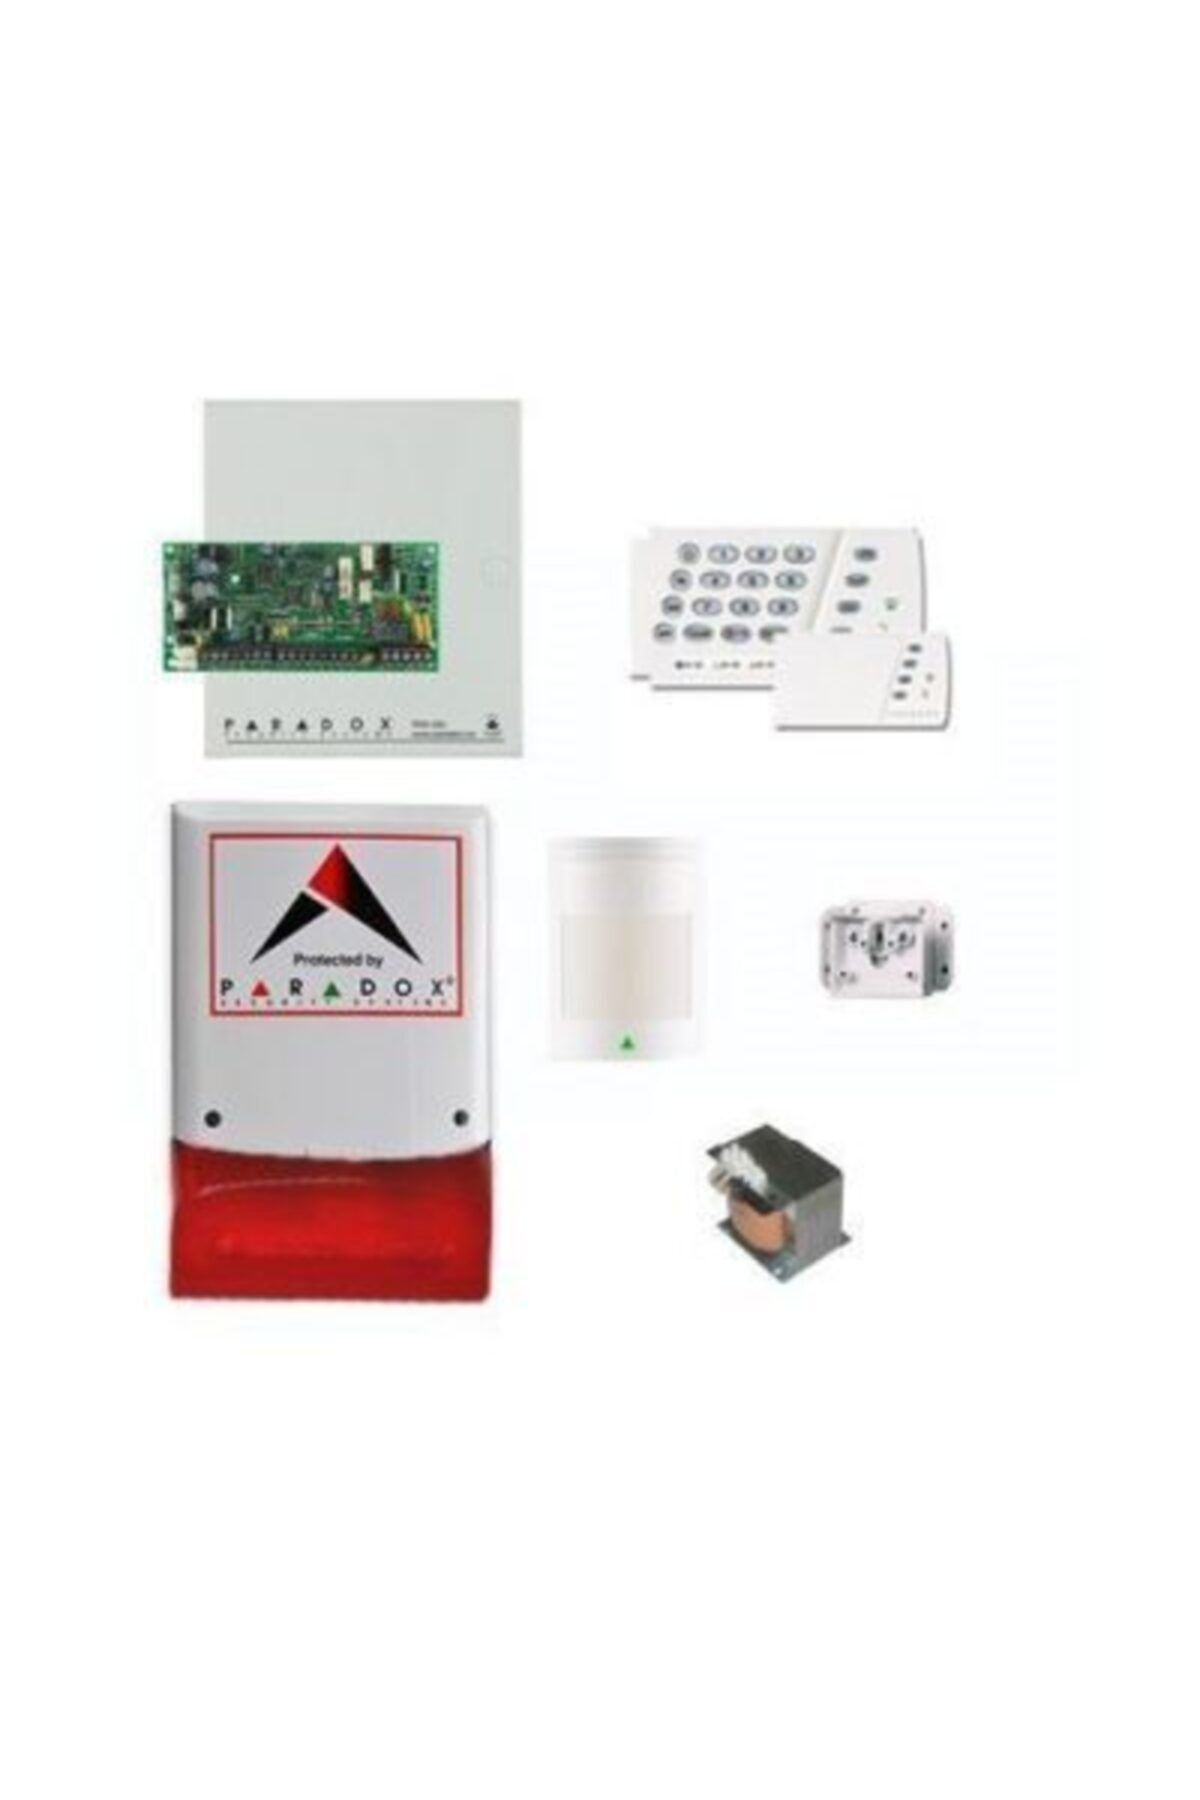 PARADOX Sp-4000 Kablolu Hırsız Alarm Seti (panel + Keypad + Siren + Trafo + 1 Adet Pır Dedektörü)